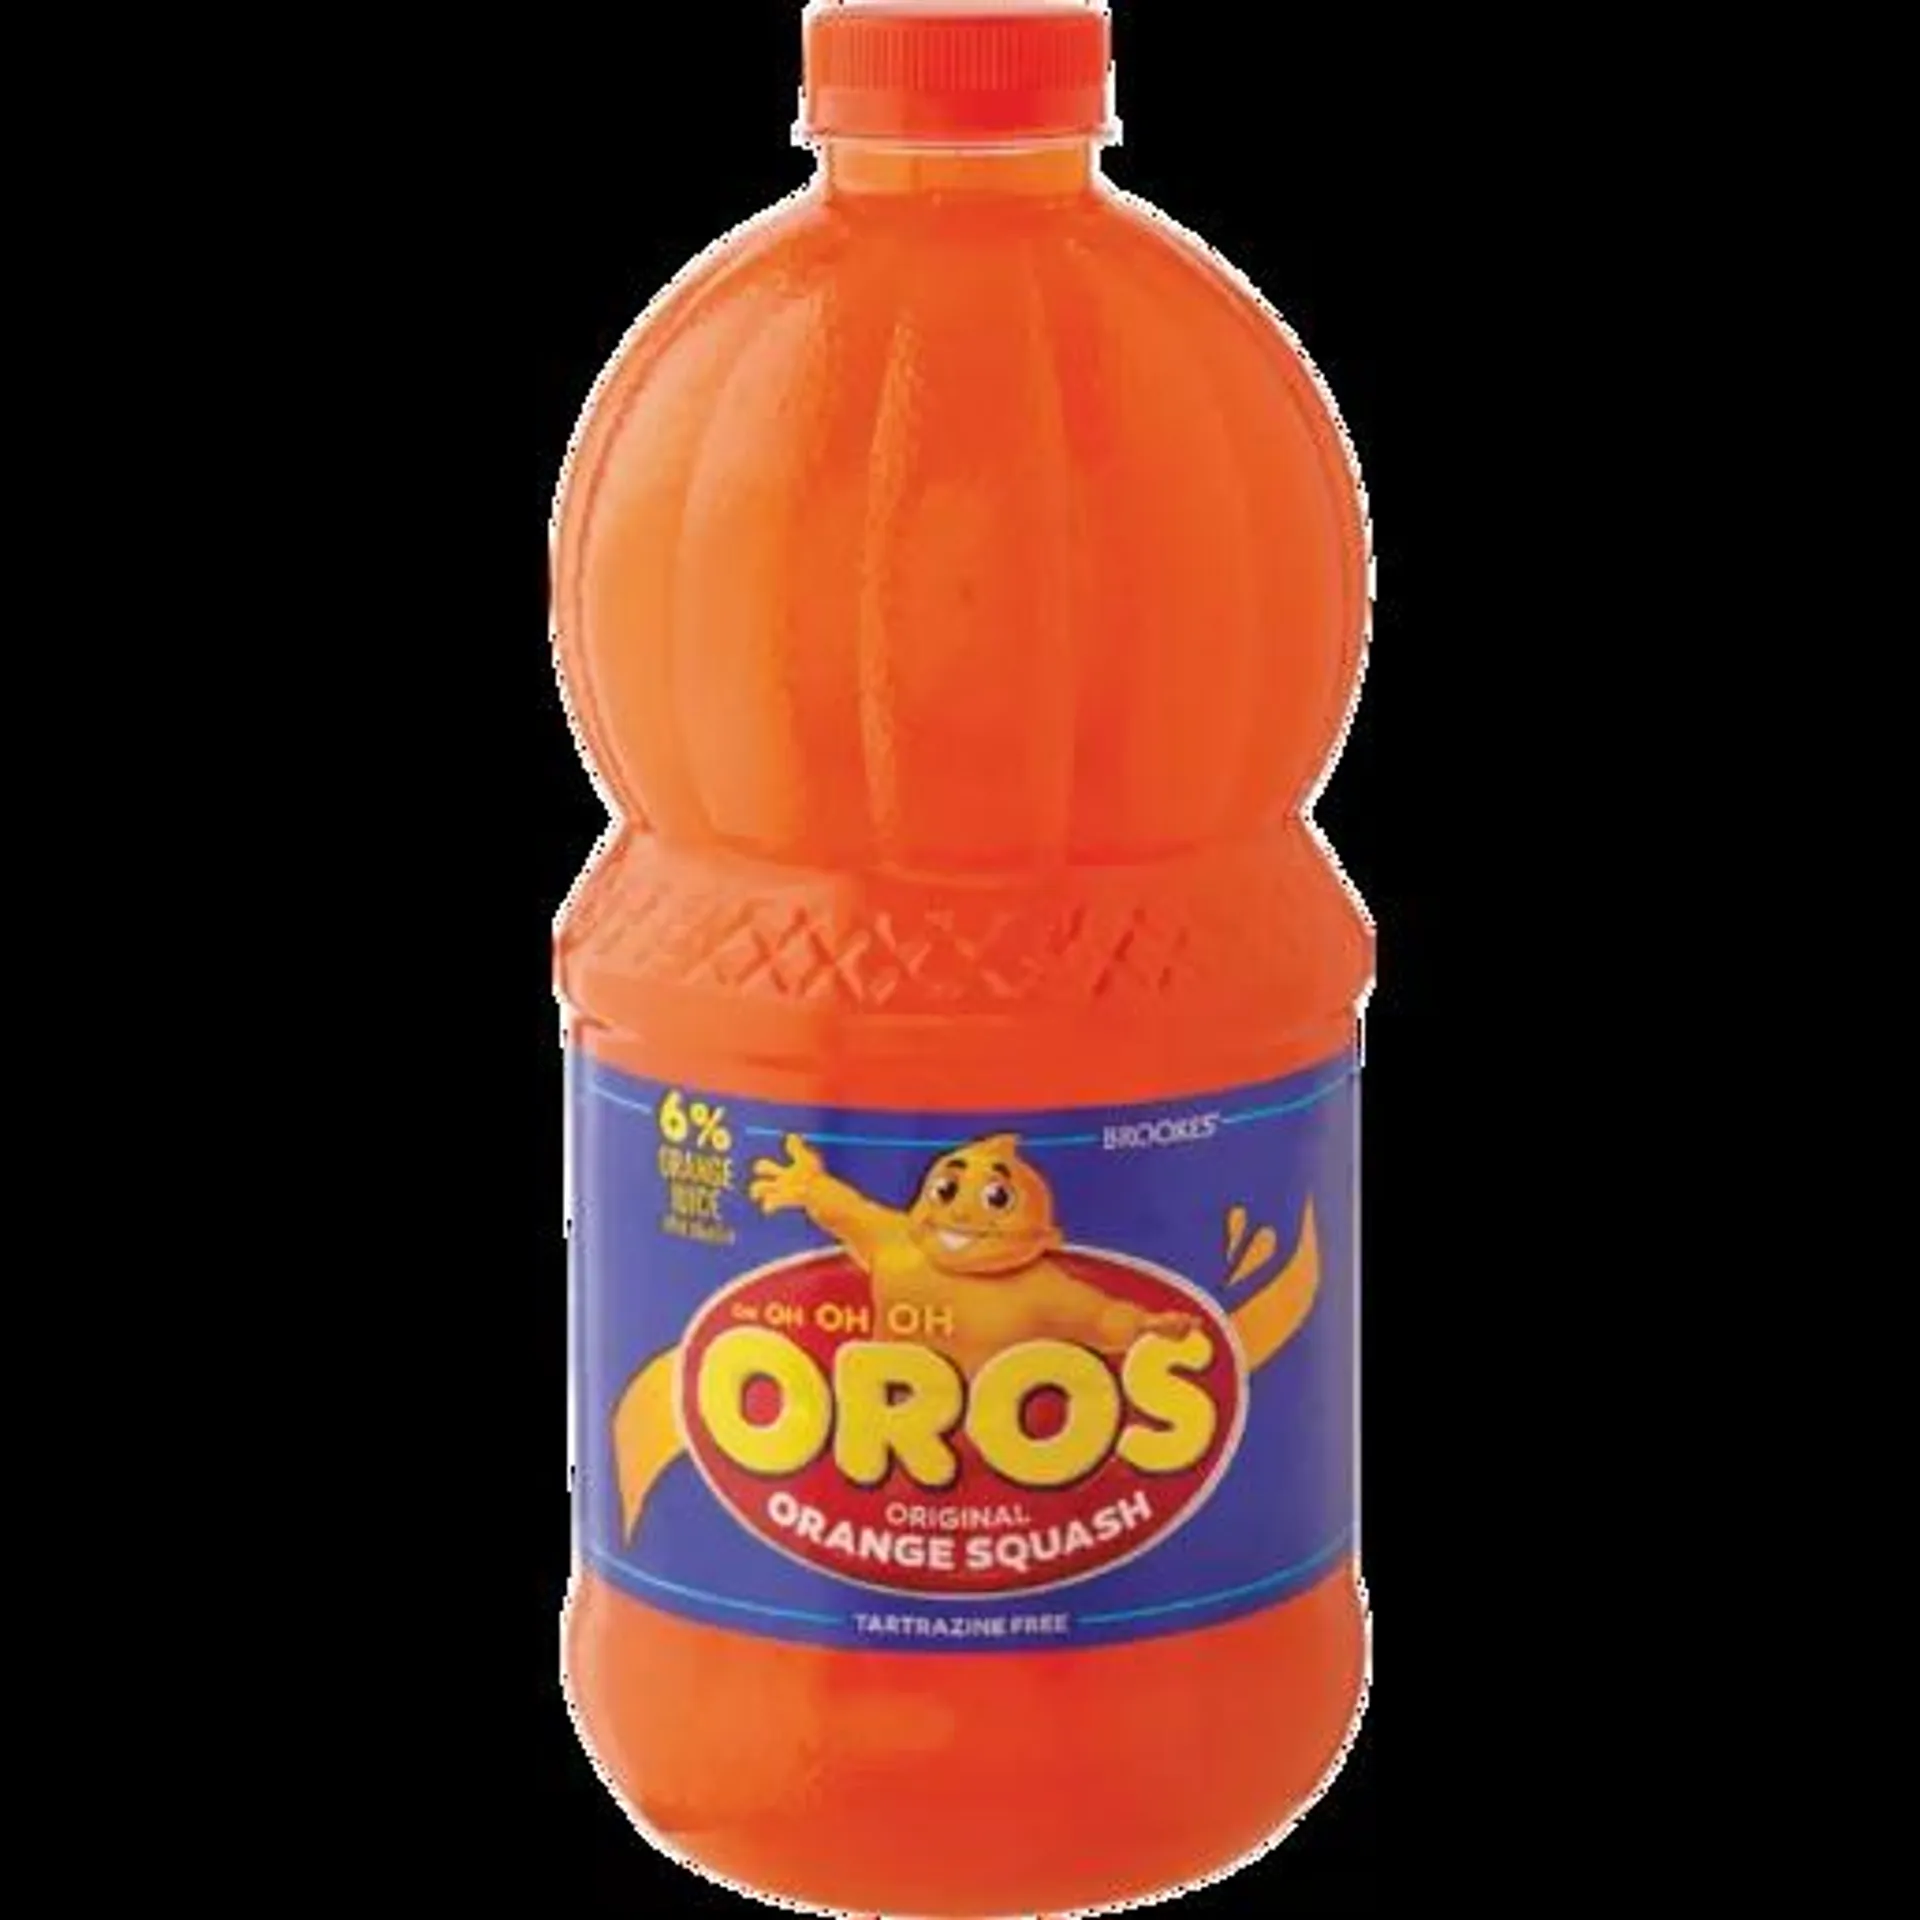 Oros Orange Flavoured Concentrated Squash 2L